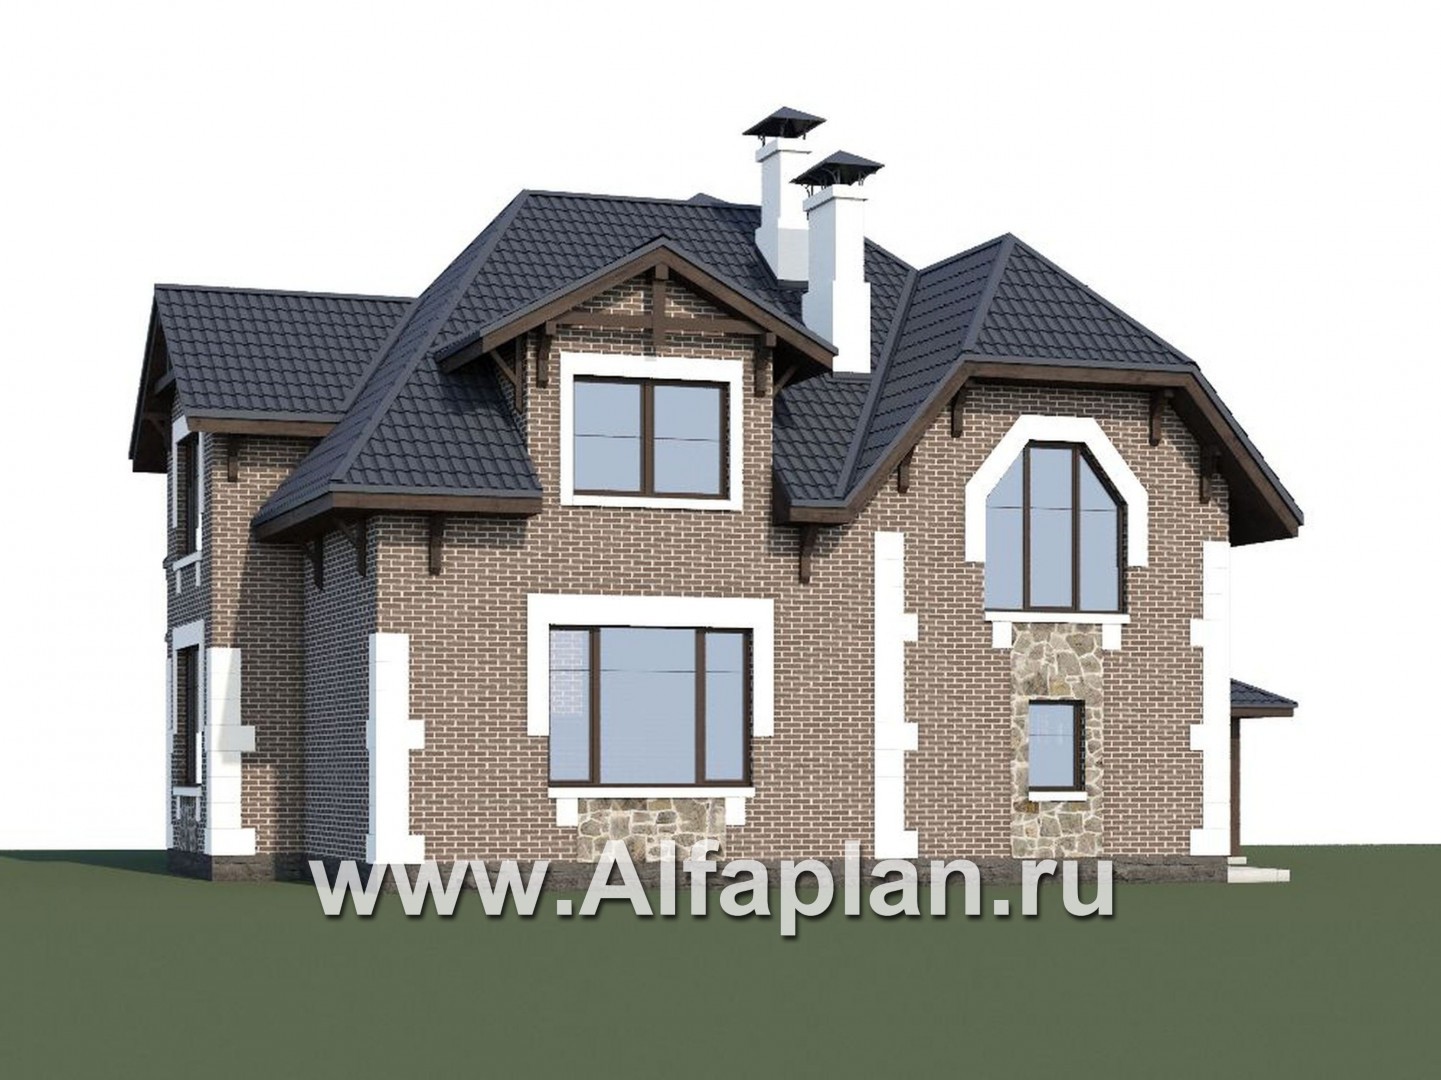 Проекты домов Альфаплан - «Корона» - коттедж с гаражом, навесом и красивым эркером - дополнительное изображение №1